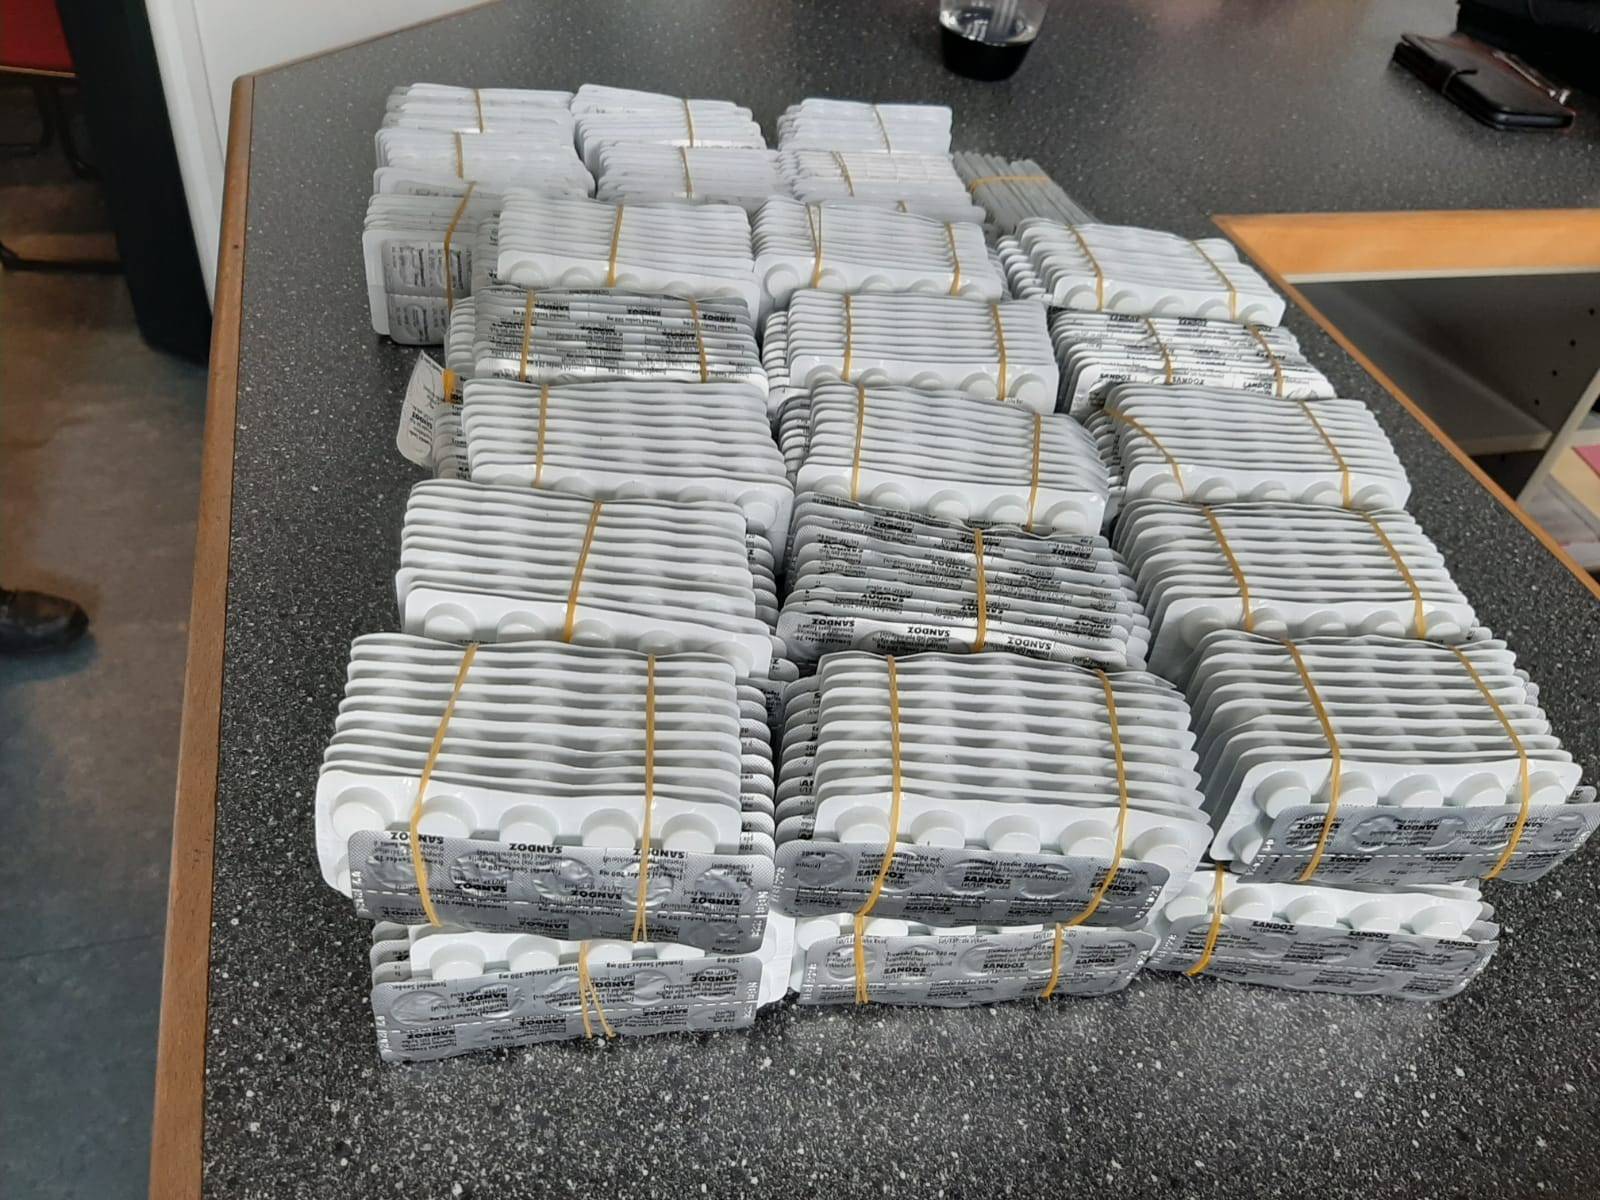 Bundespolizei beschlagnahmt in Wuppertal 8.000 Tabletten